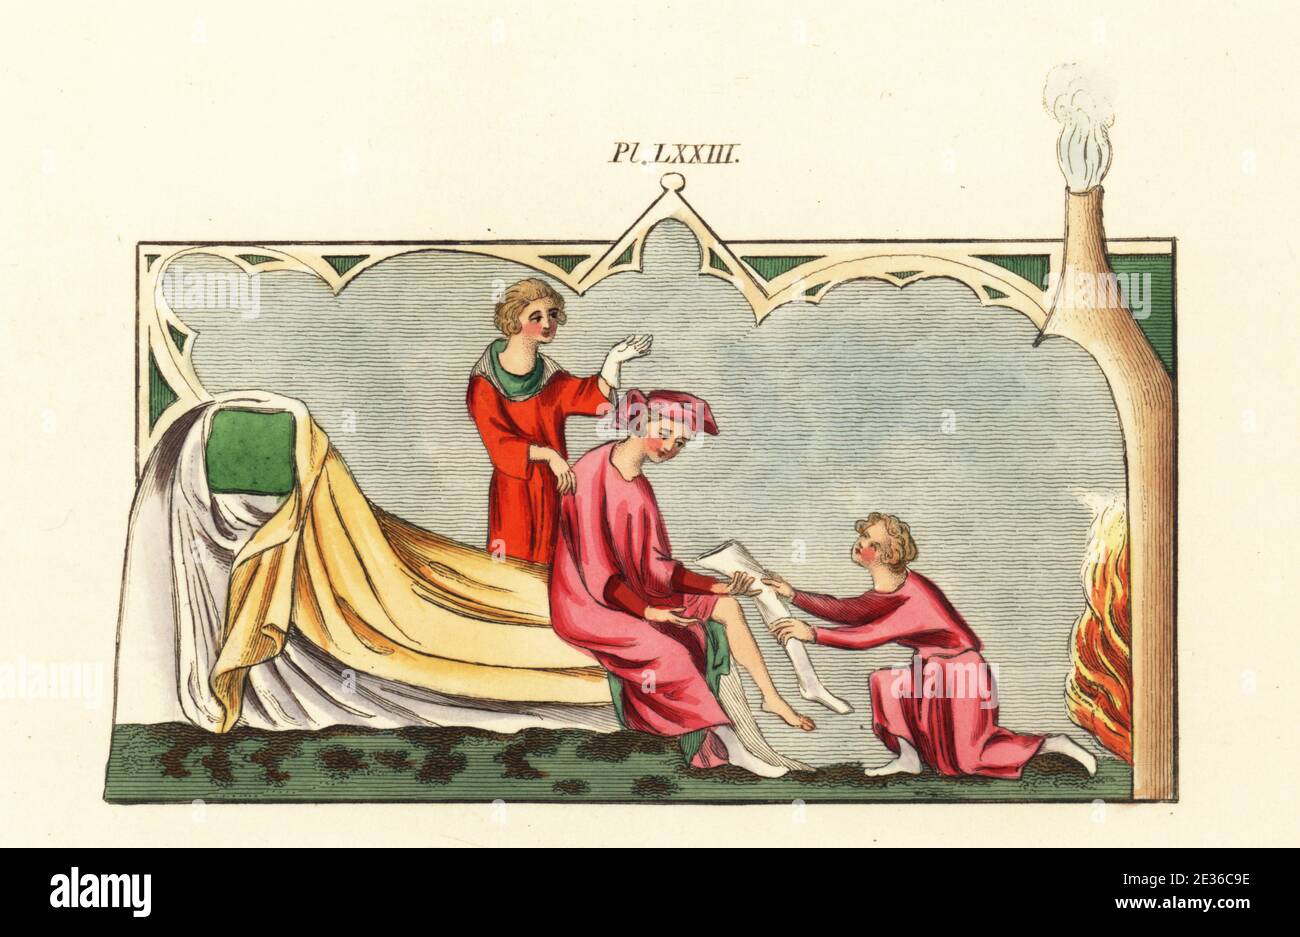 Gentleman s'habille dans sa chambre, XIVe siècle. Un serviteur aidant un  homme s'habille lui-même, offrant un bas de Noël, tandis qu'un autre essaie  un gant. L'homme est assis sur un lit dans